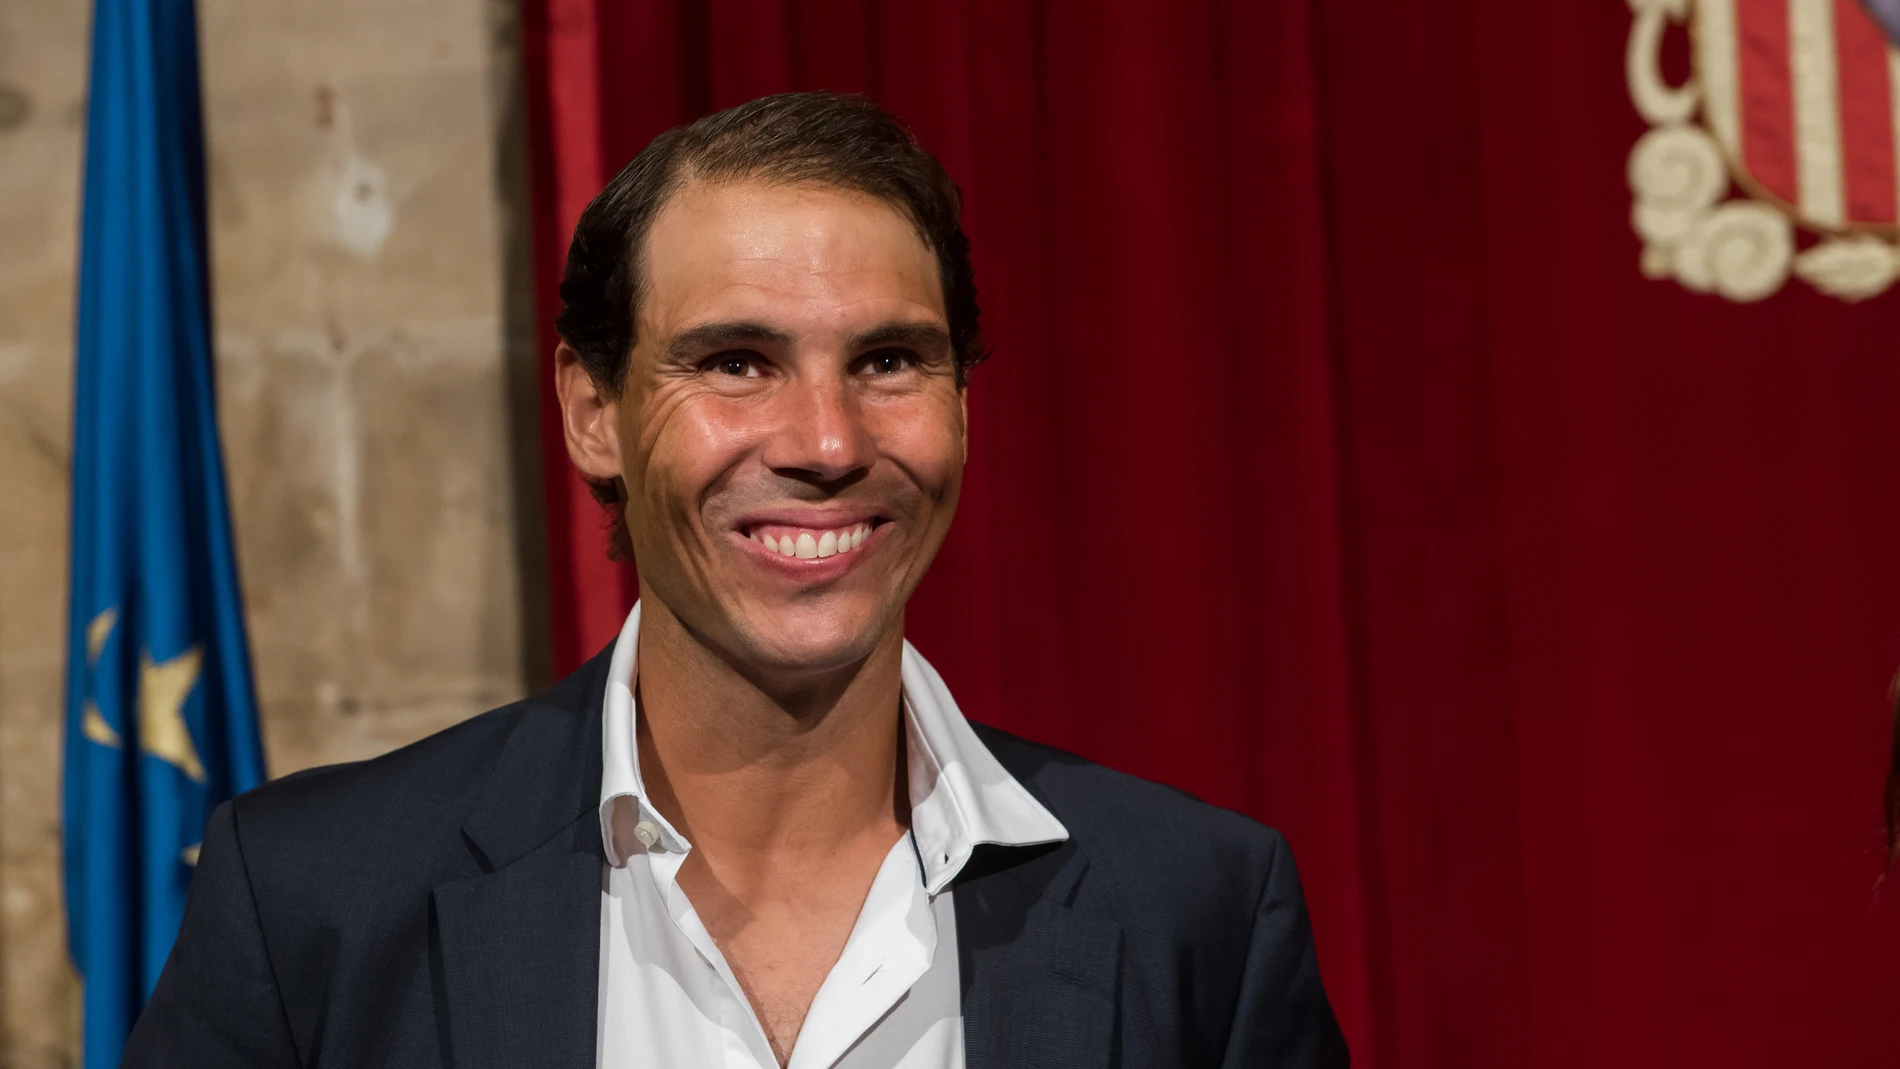 El tenista Rafel Nadal sonríe durante un acto de reconocimiento a su trayectoria deportiva organizado por el Govern balear